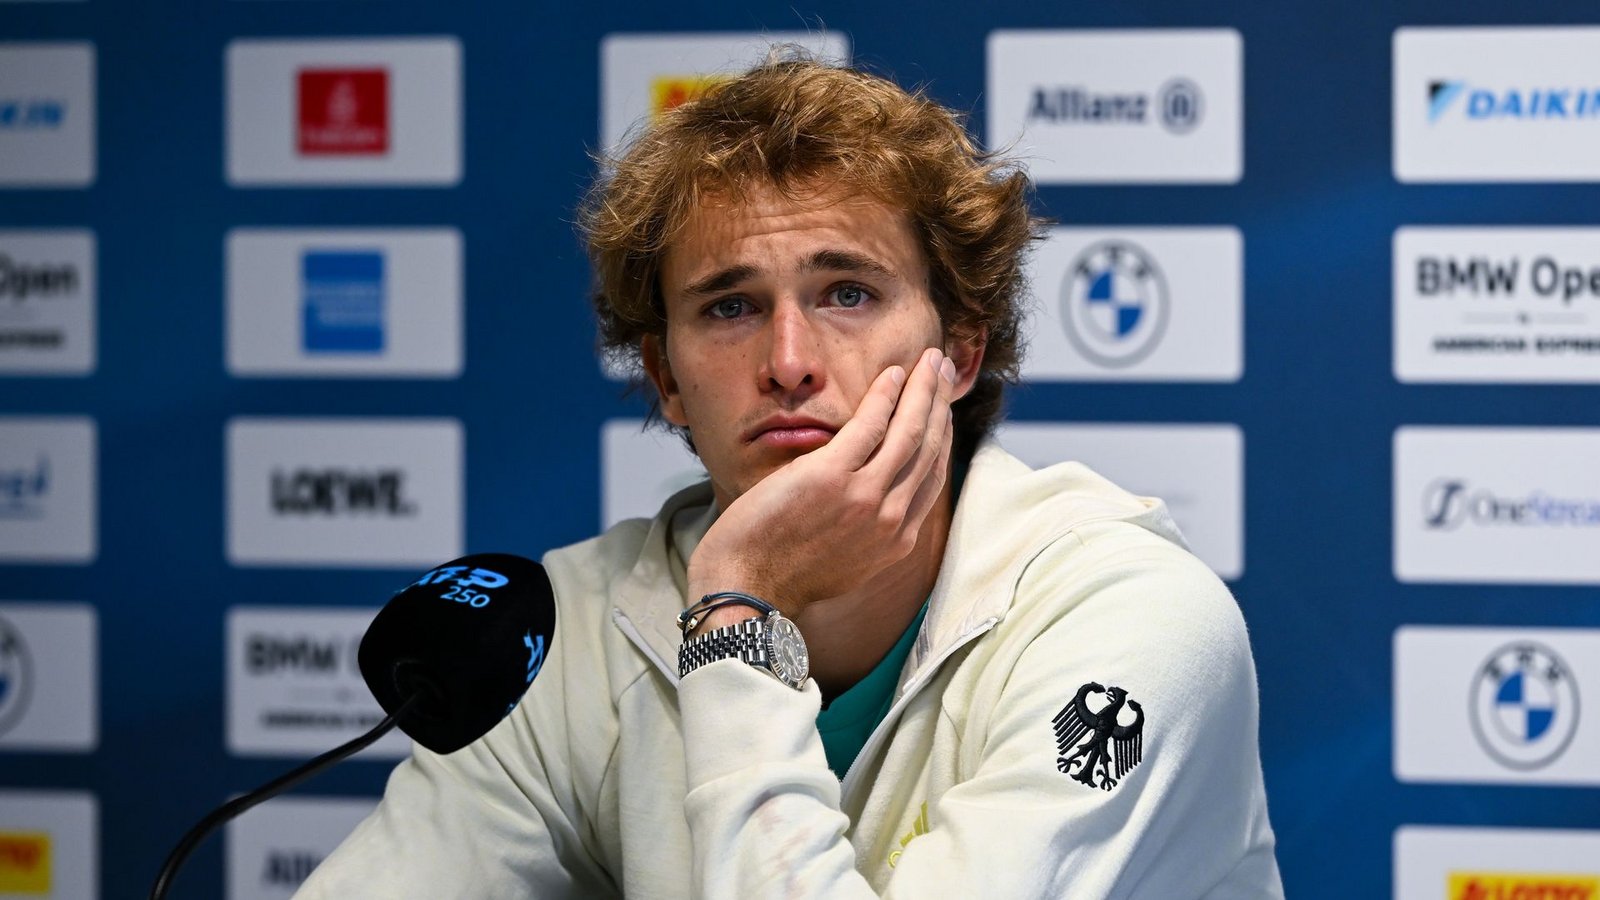 Der deutsche Tennis-Profi Alexander Zverev hat sich kritisch über die Ansetzungen seiner Spiele geäußert.Foto: Sven Hoppe/dpa/Archivbild